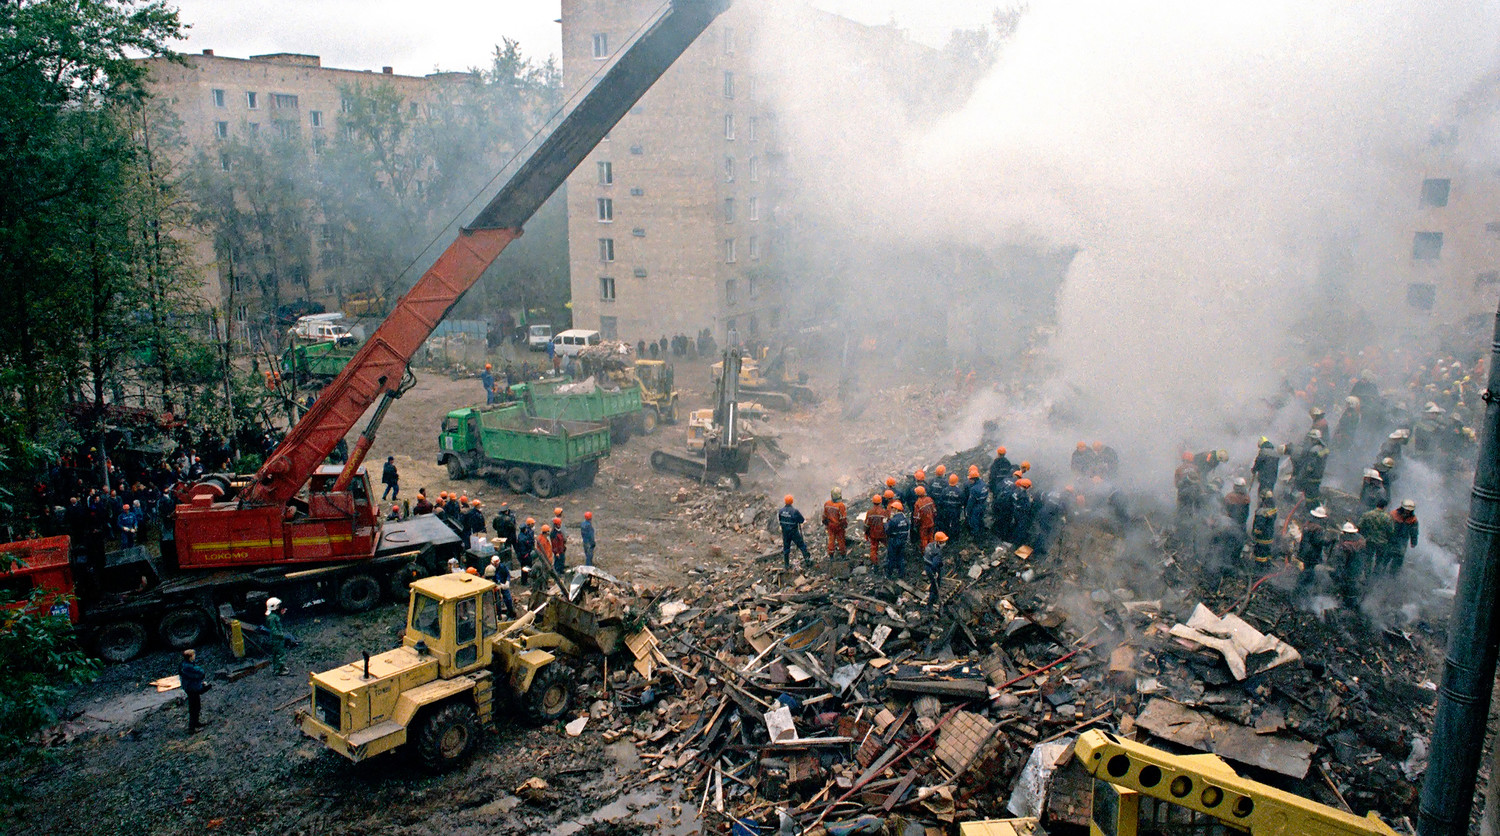 Взорвали дома в москве каком году. Взрывы на каширке и Гурьянова 1999. Взрыв жилого дома на каширке 1999. Взрыв на улице Гурьянова 1999. 13 Сентября 1999 Каширское шоссе.